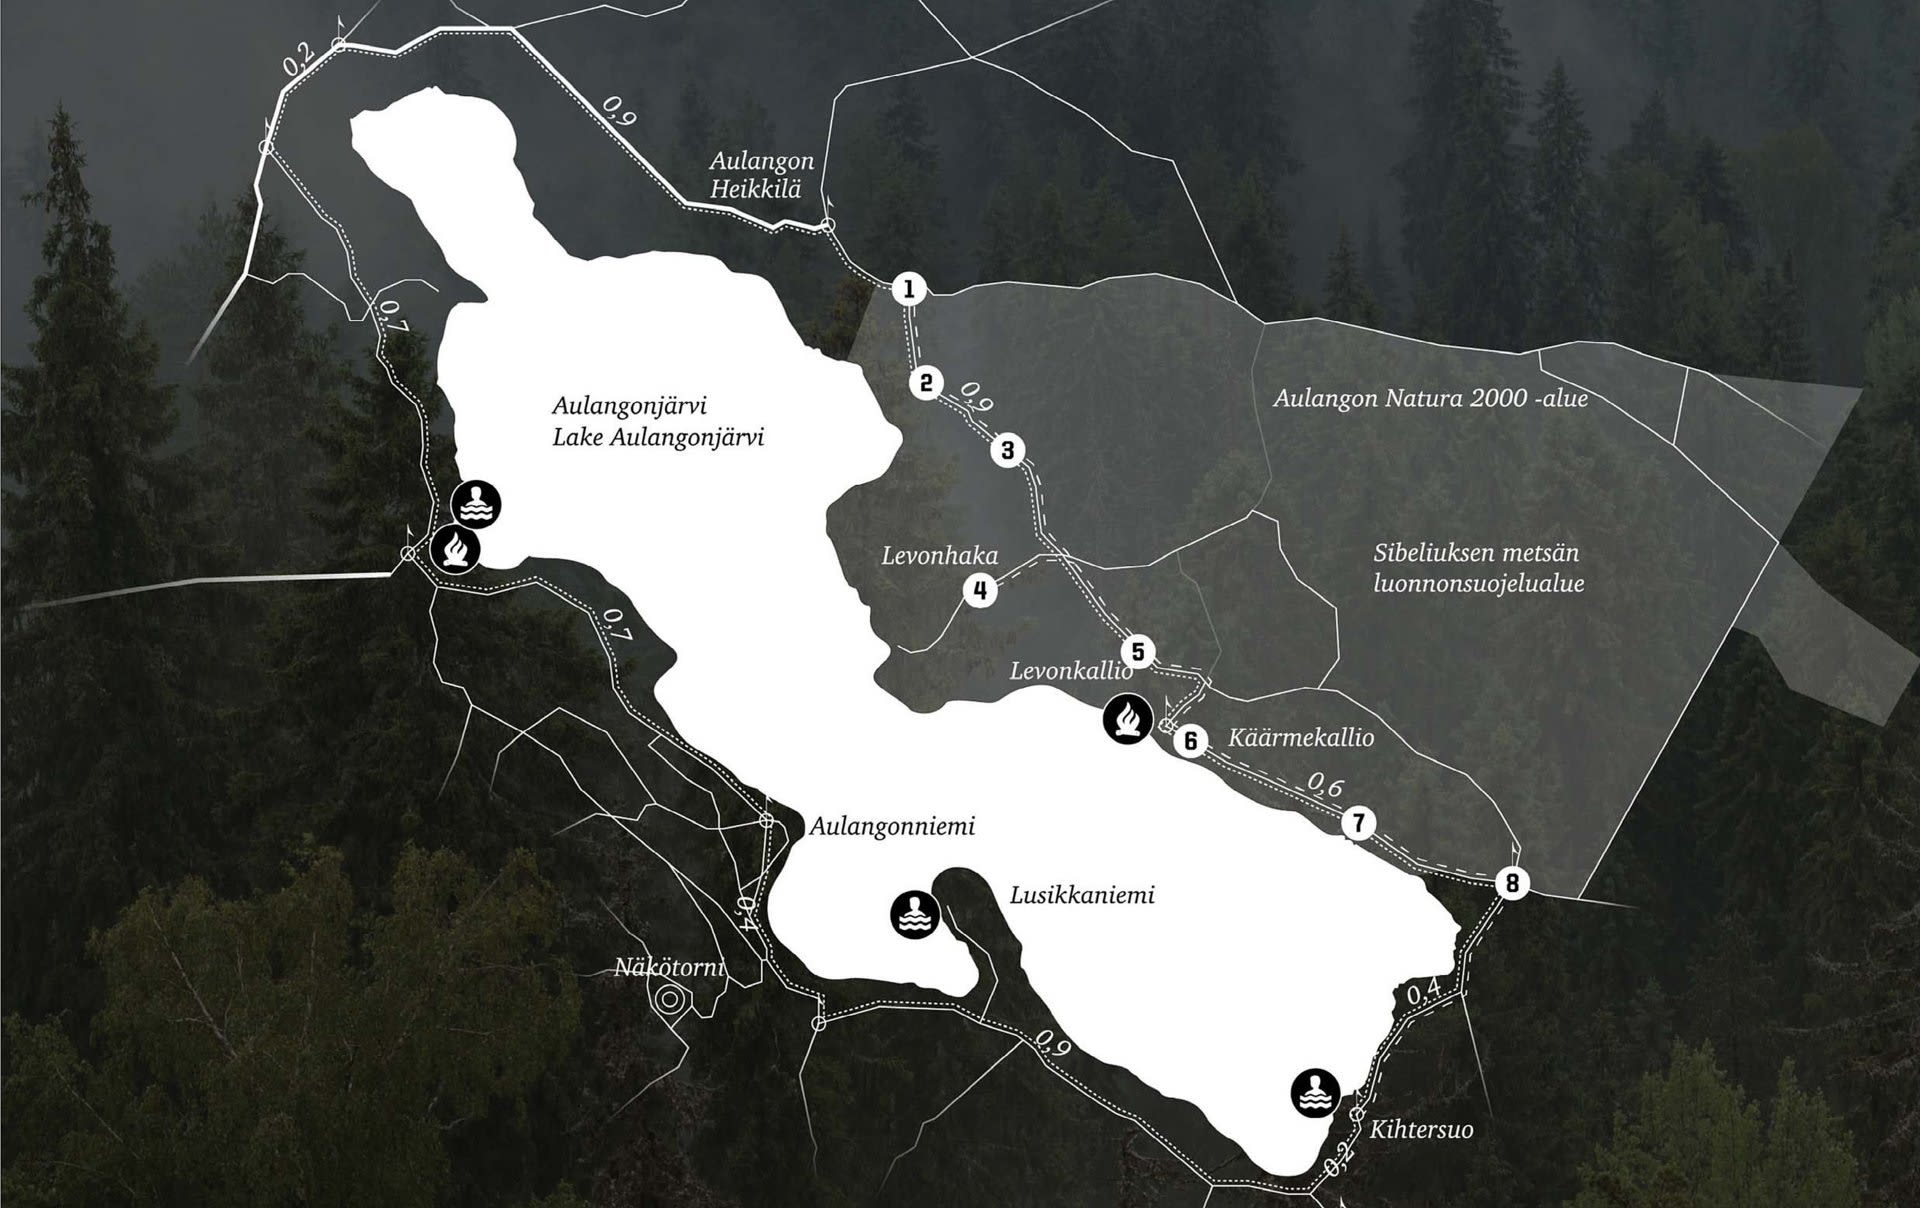 Karttagrafiikka Sibeliuksen Metsän luonnonsuojelualueesta, taustalla metsäkuva